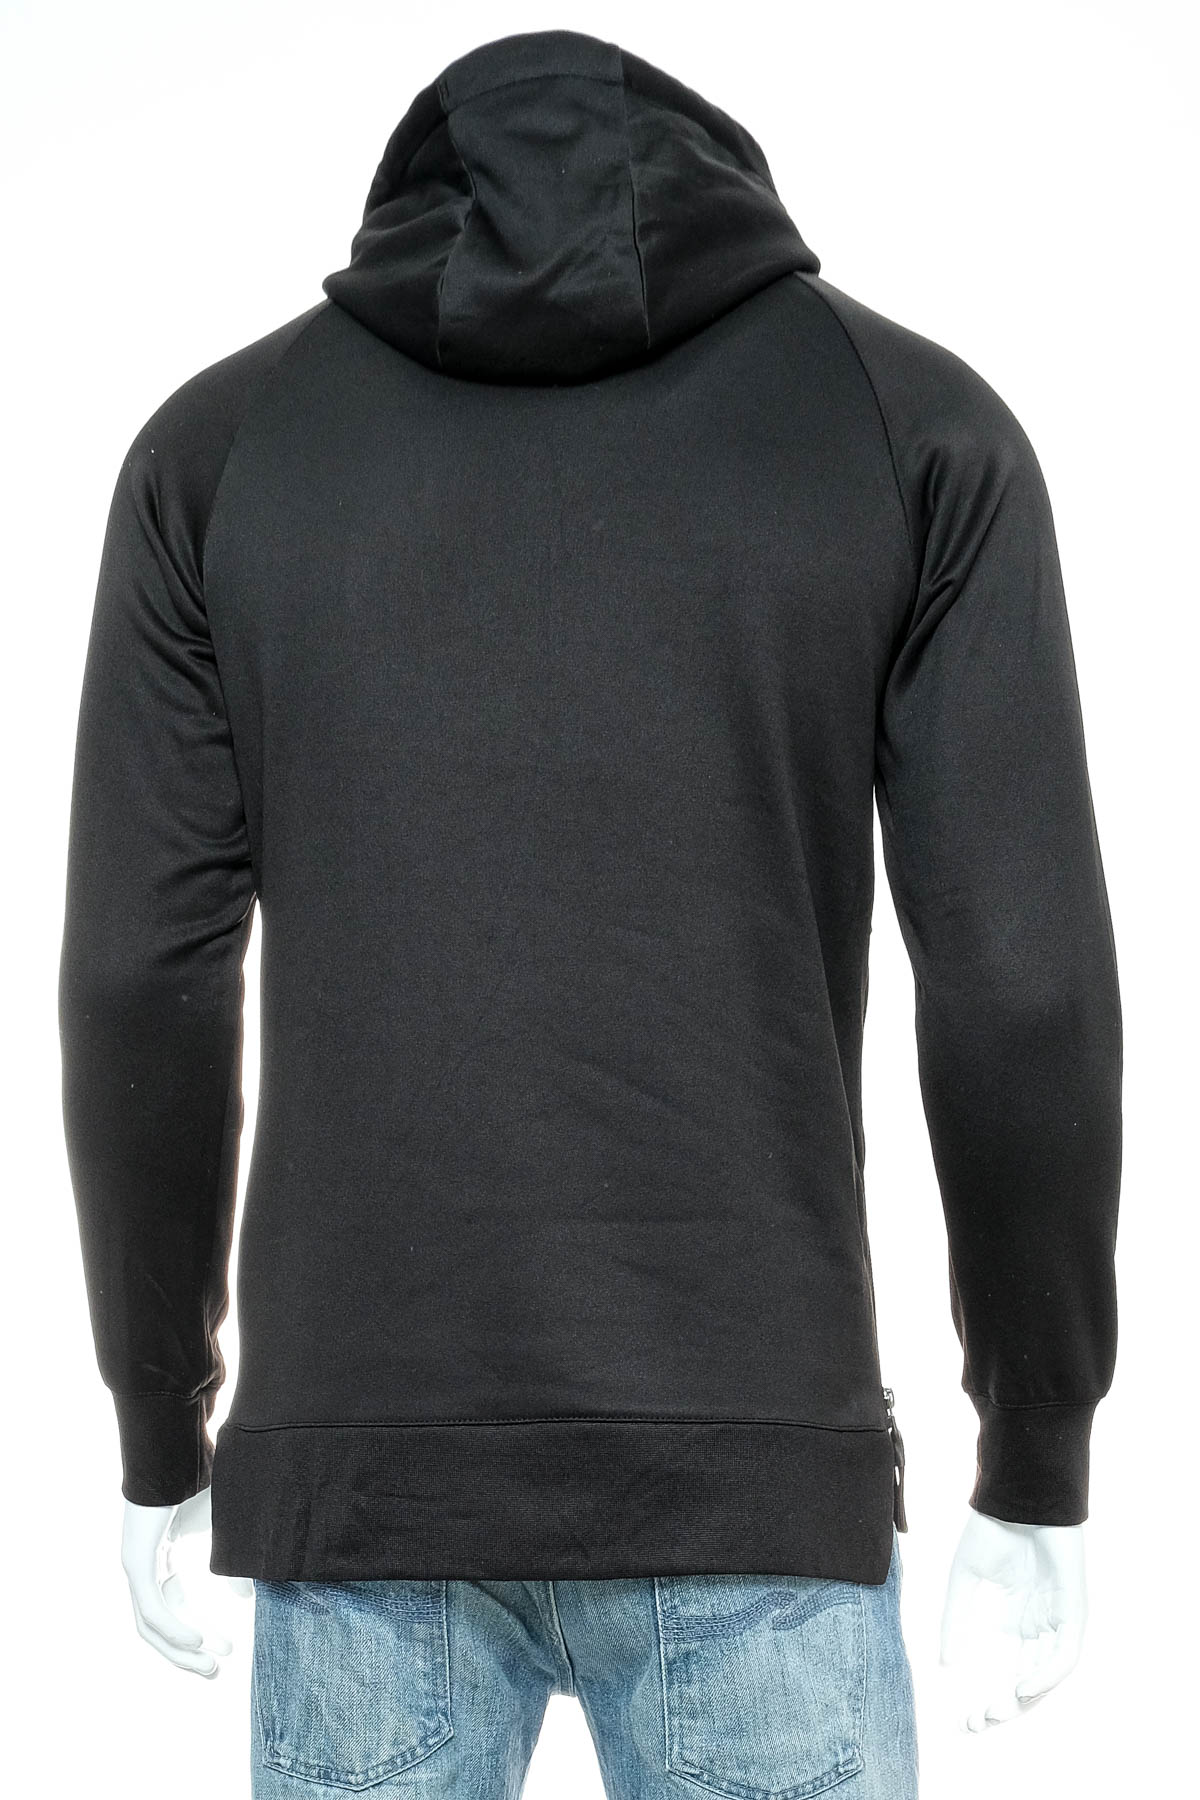 Men's sweatshirt - AND1 - 1